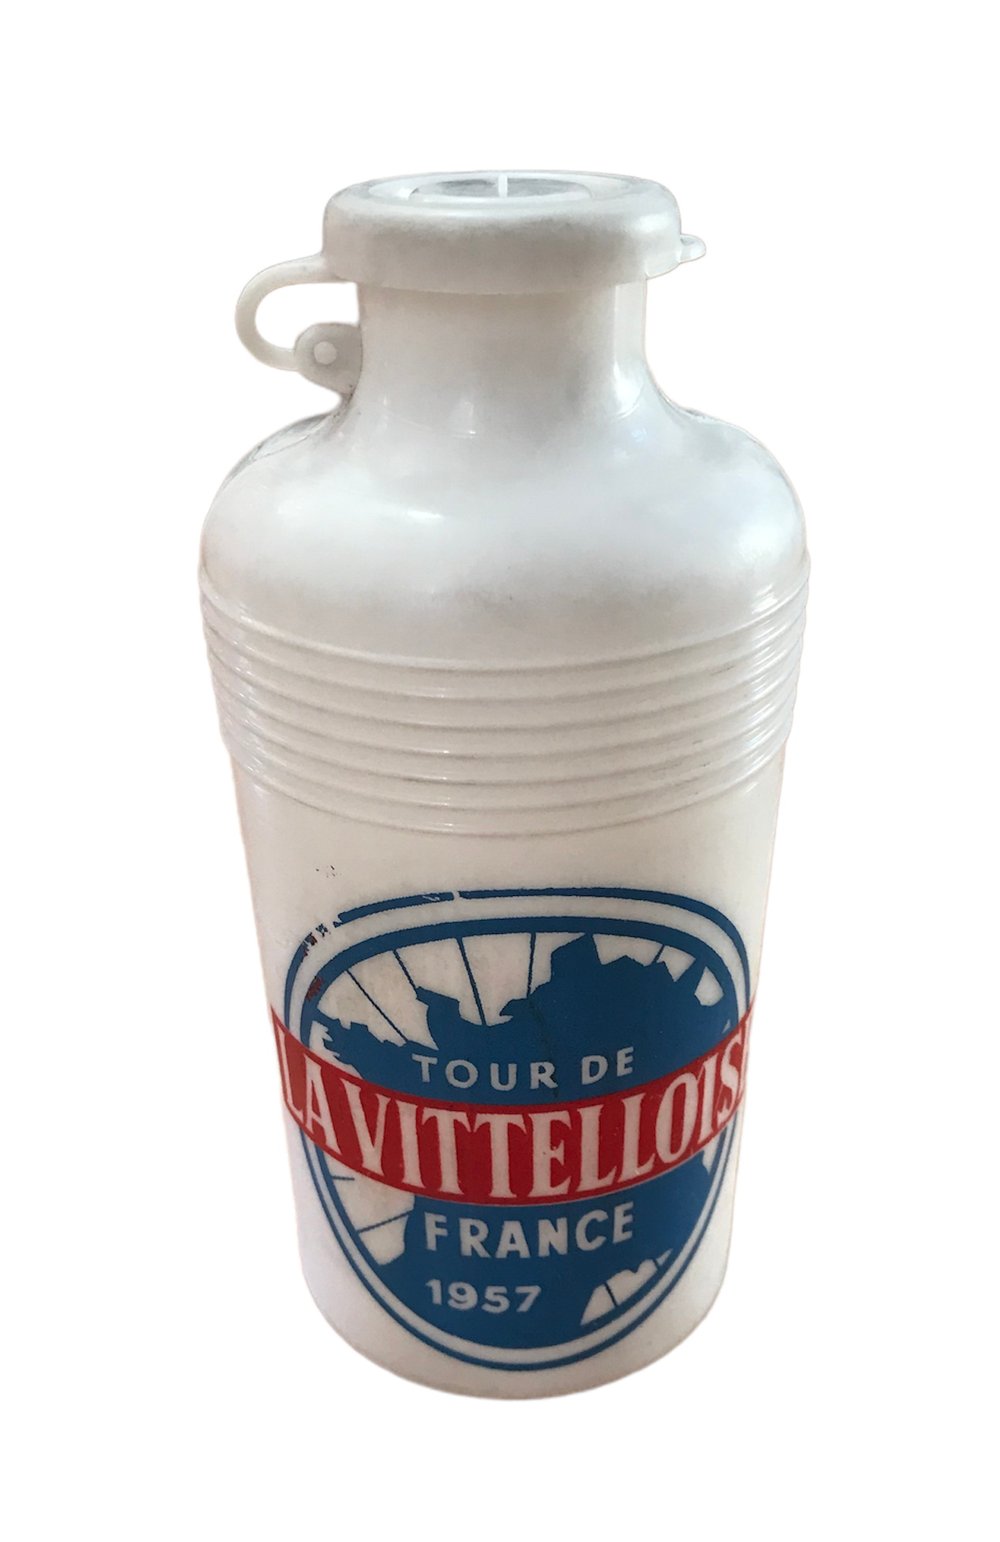 1957 - Tour de France - La Vitelloise